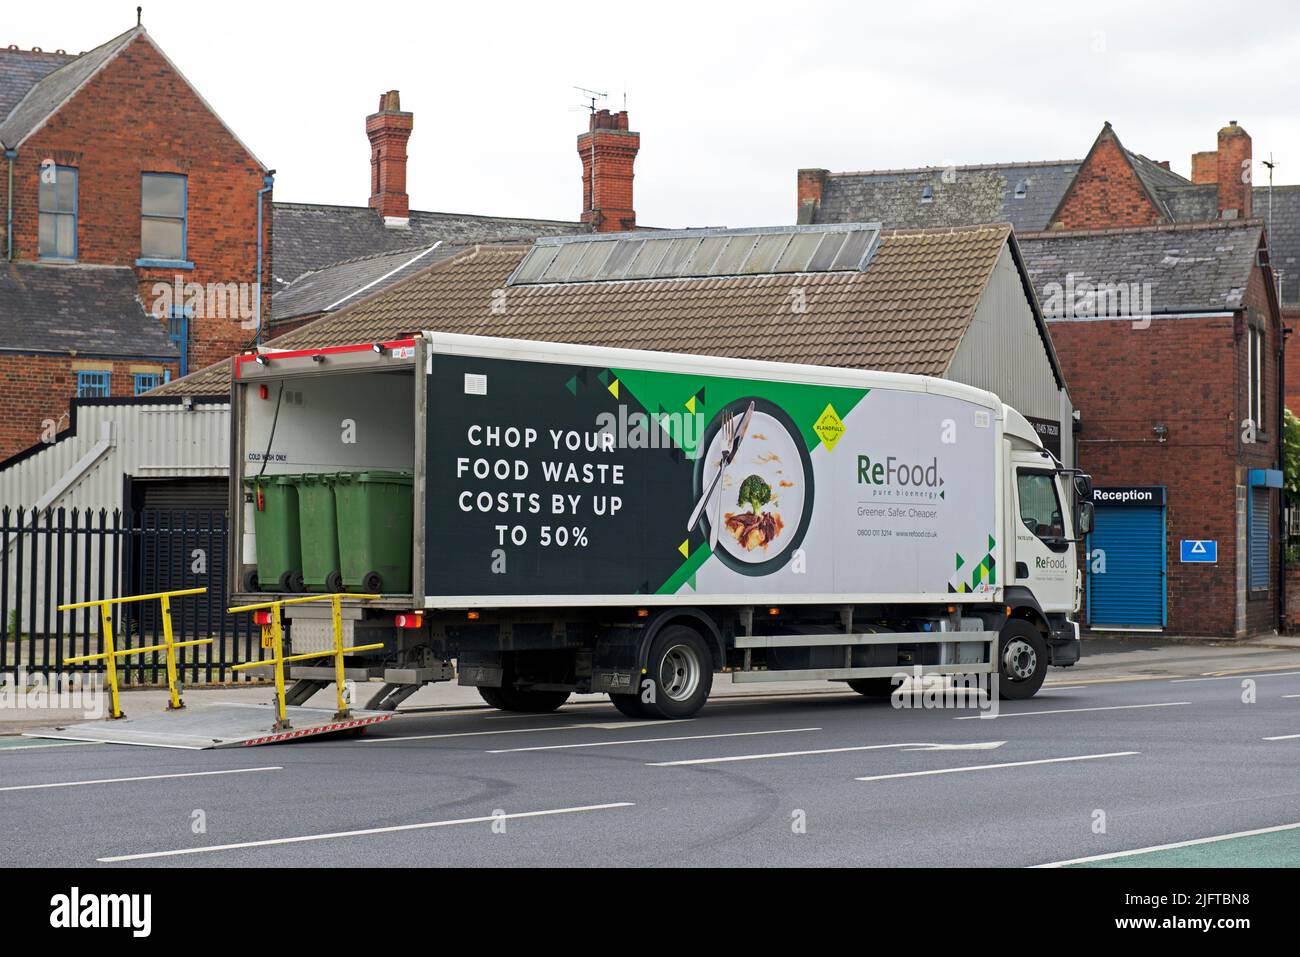 Camion ReFood collectant les déchets alimentaires, pour se transformer en bioénergie, Goole, East Yorkshire, Angleterre Royaume-Uni Banque D'Images